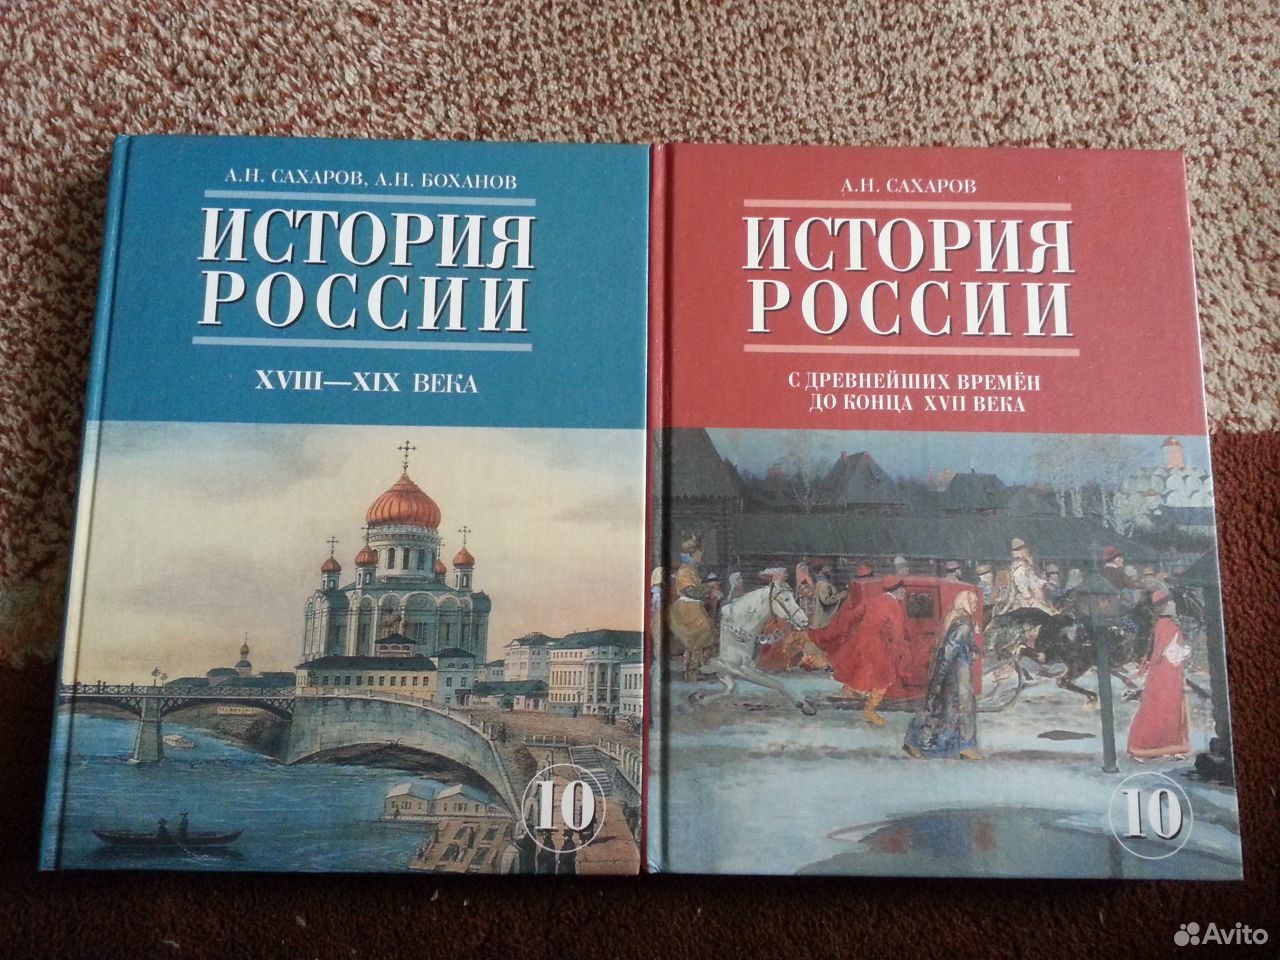 Учебник история западной россии